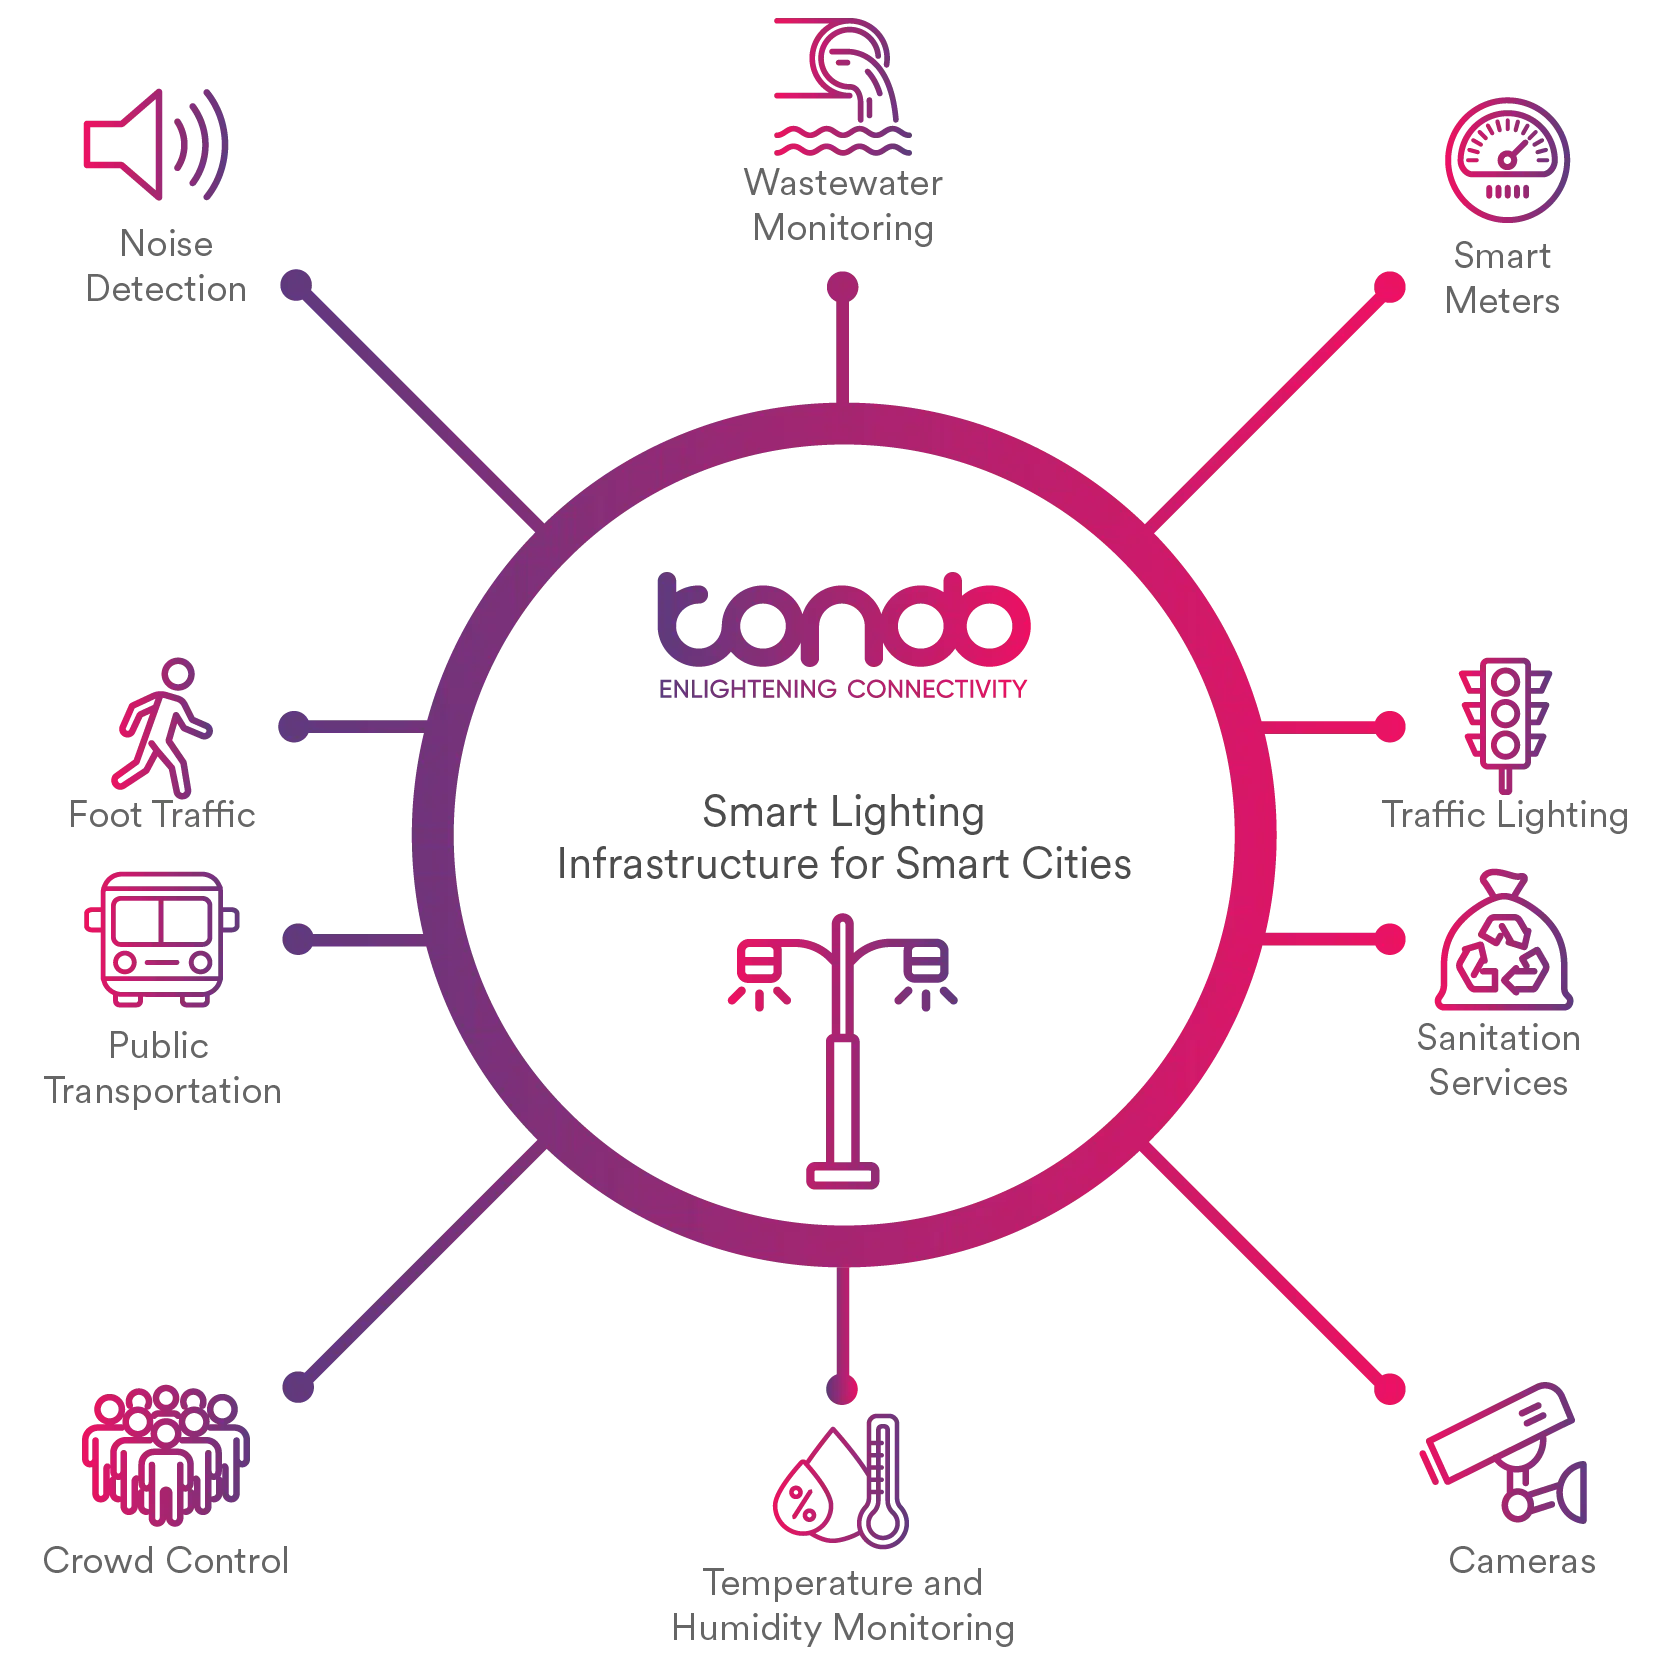 Tondo Sensor Solution Diagram describing a range of different smart city applications.